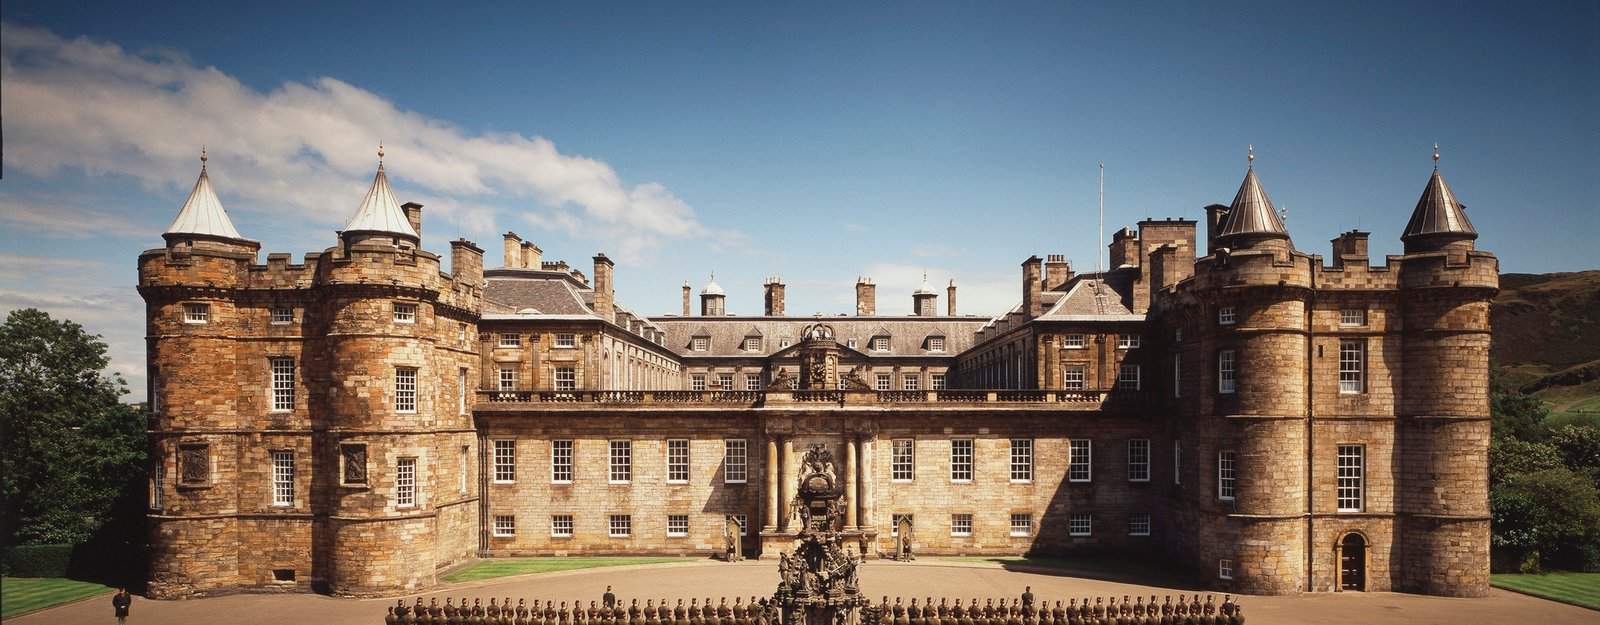 Le palais de Holyroodhouse à Édimbourg, résidence officielle des rois britanniques en Écosse